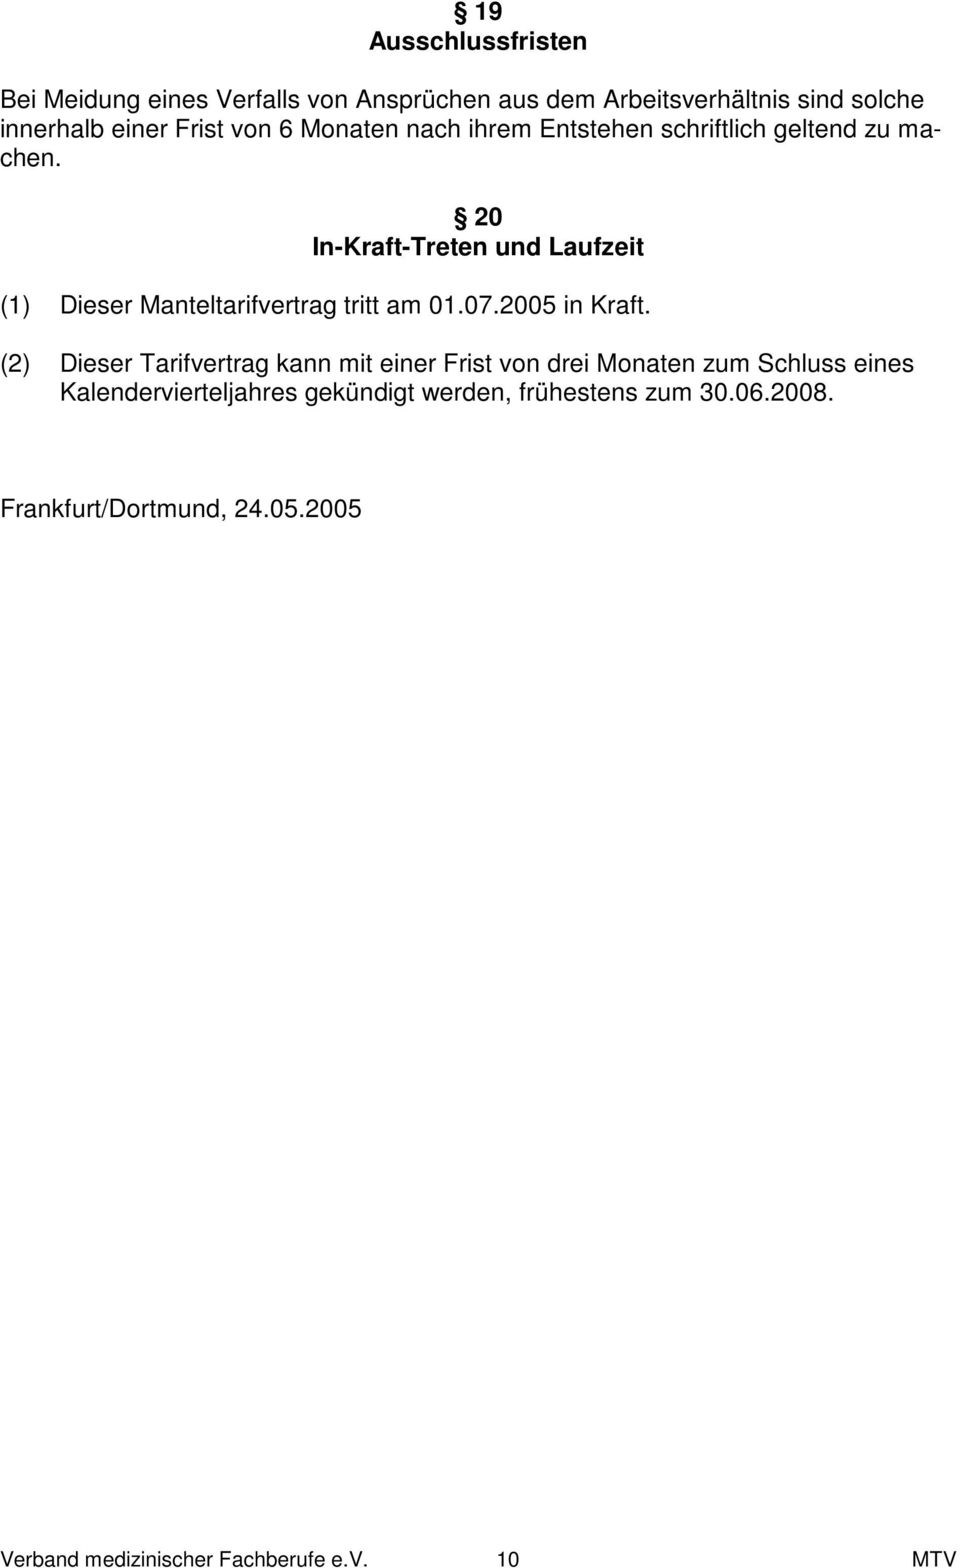 20 In-Kraft-Treten und Laufzeit (1) Dieser Manteltarifvertrag tritt am 01.07.2005 in Kraft.